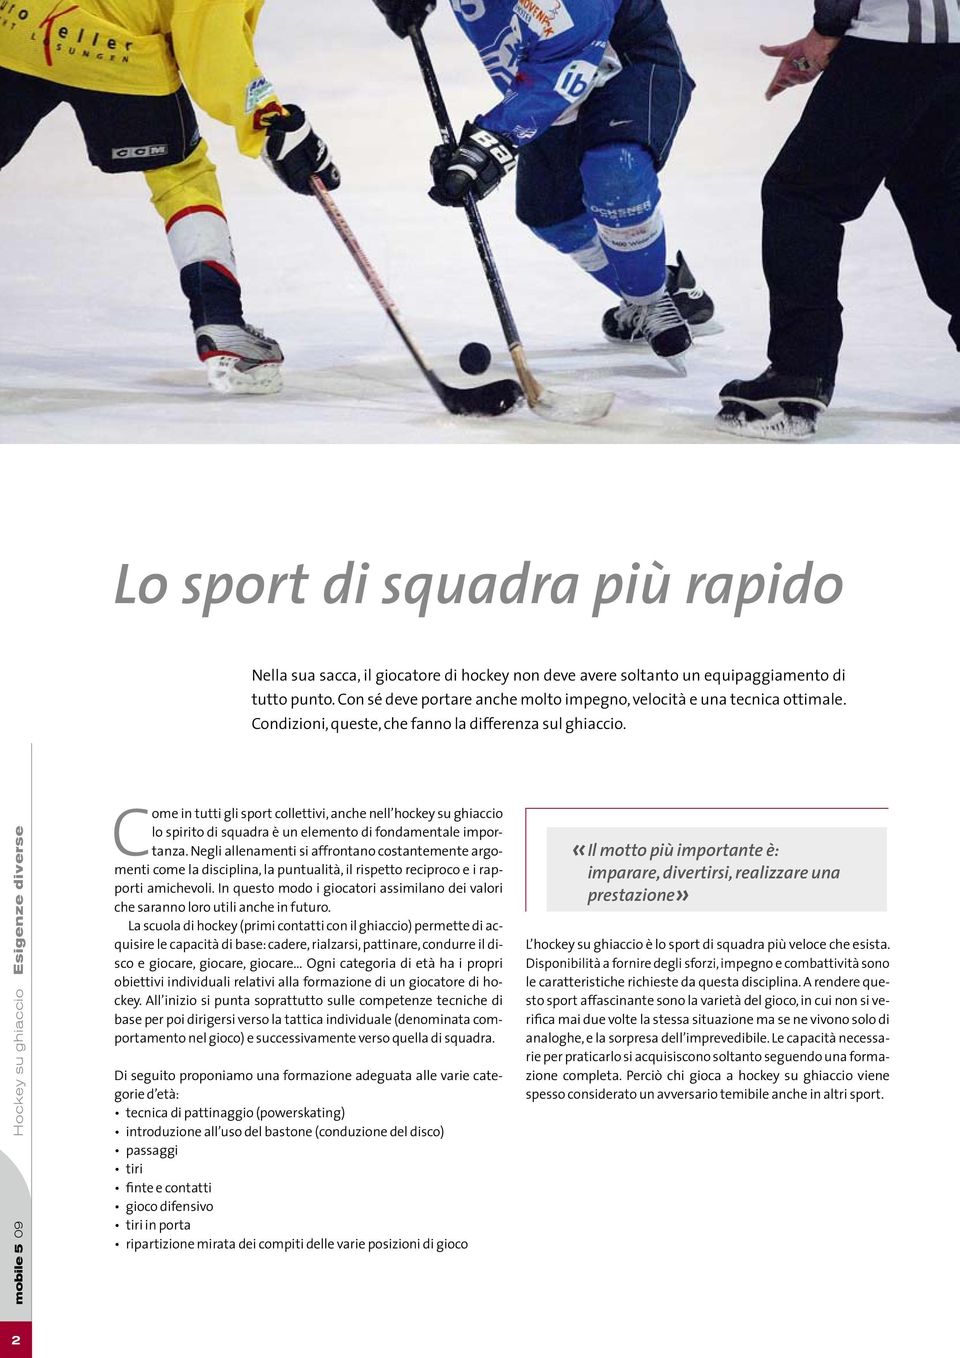 mobile 5 09 Hockey su ghiaccio Esigenze diverse Come in tutti gli sport collettivi, anche nell hockey su ghiaccio lo spirito di squadra è un elemento di fondamentale importanza.